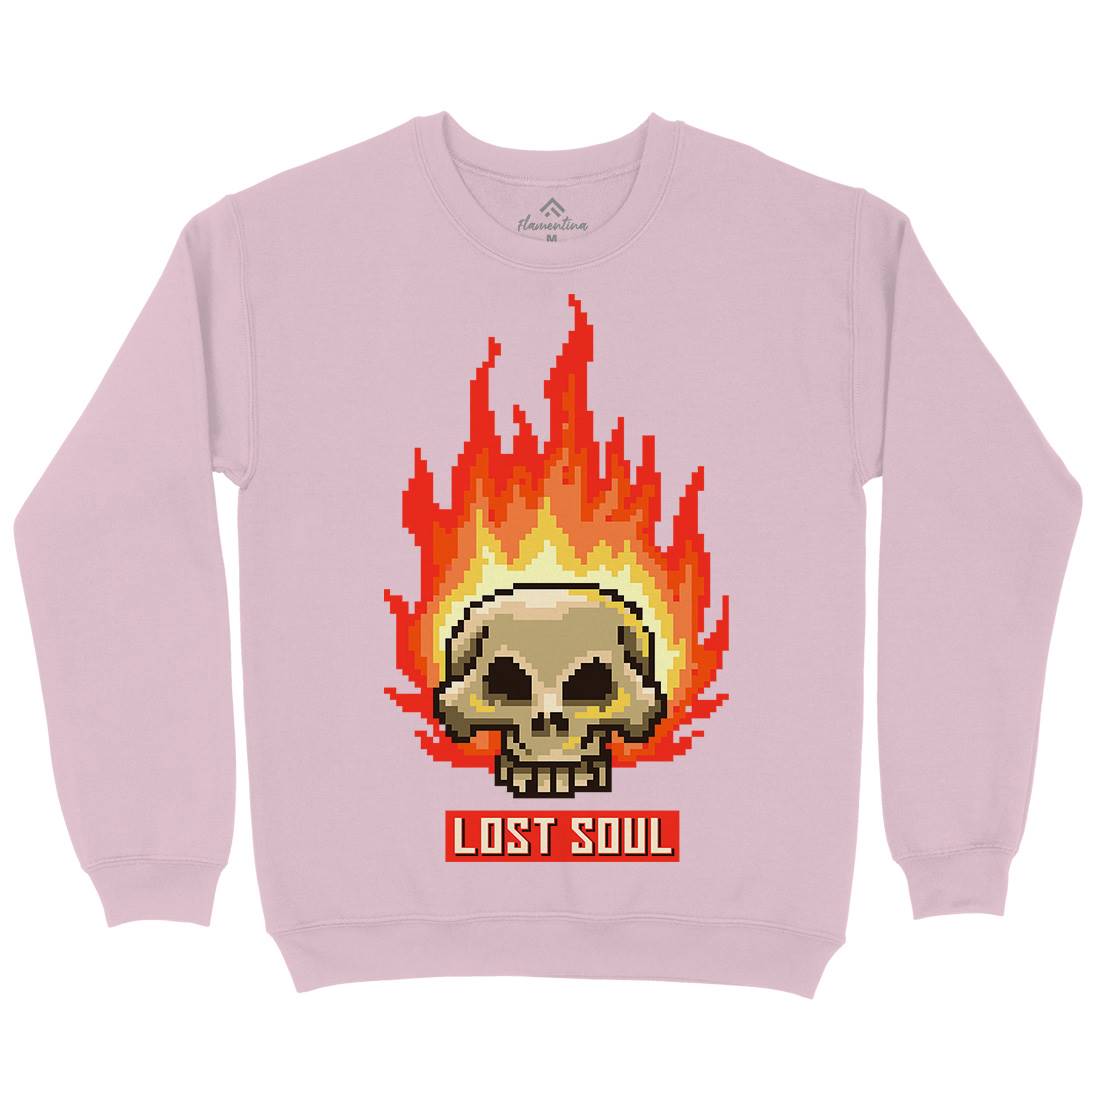 Burning Skull Lost Soul Kids Crew Neck Sweatshirt Retro B889